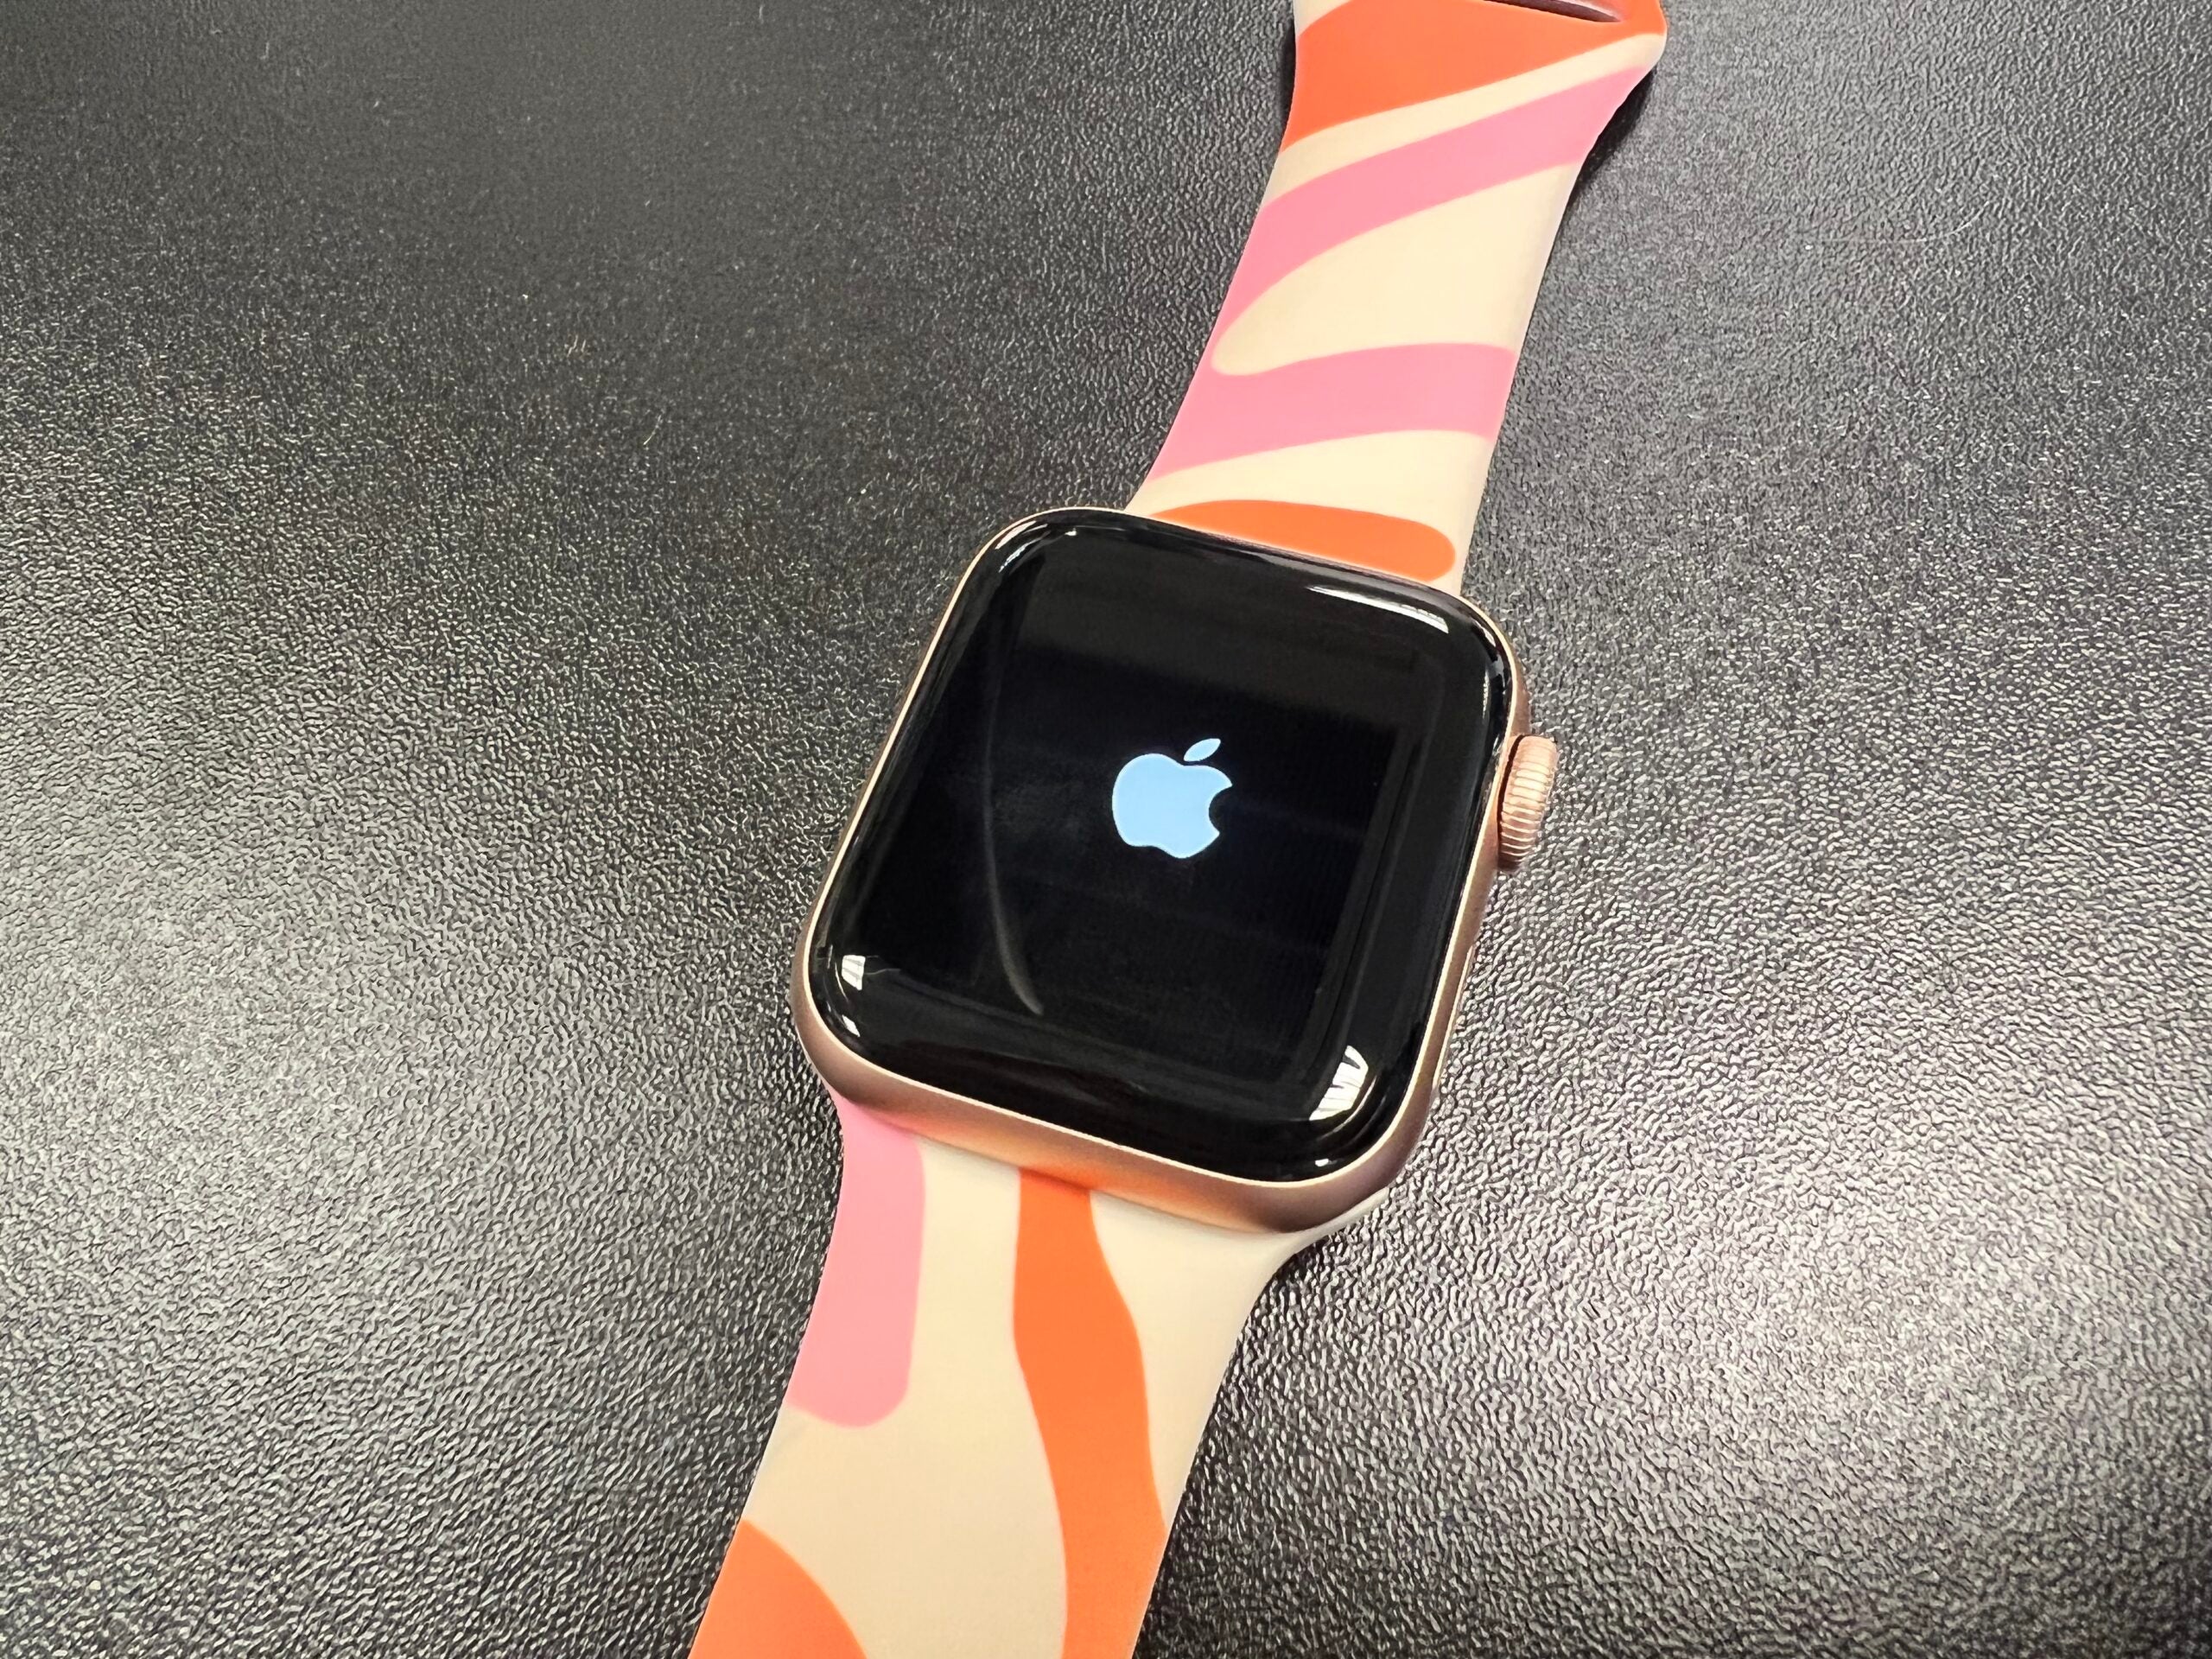 La schermata di riavvio del logo Apple che appare su Apple Watch 6 dopo il riavvio